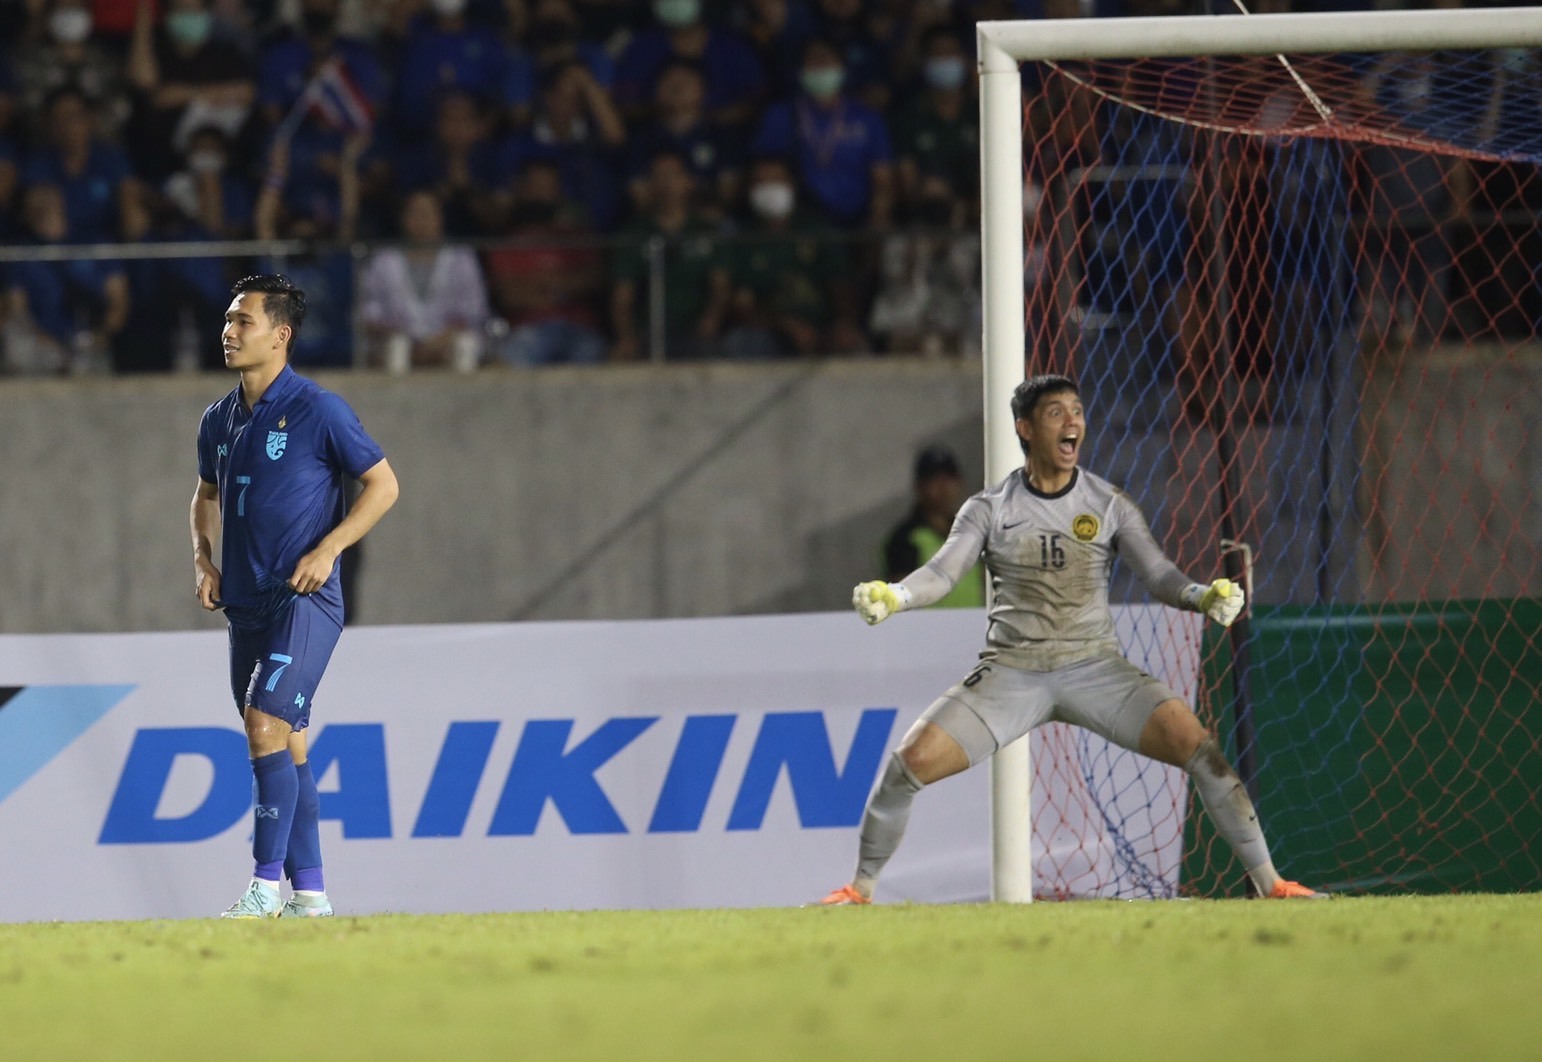 Đội tuyển Thái Lan không có lực lượng tốt nhất tại Cúp Nhà vua 2022, trong khi đội tuyển Malaysia đang chơi rất thăng hoa.  Ảnh: Siam Sports